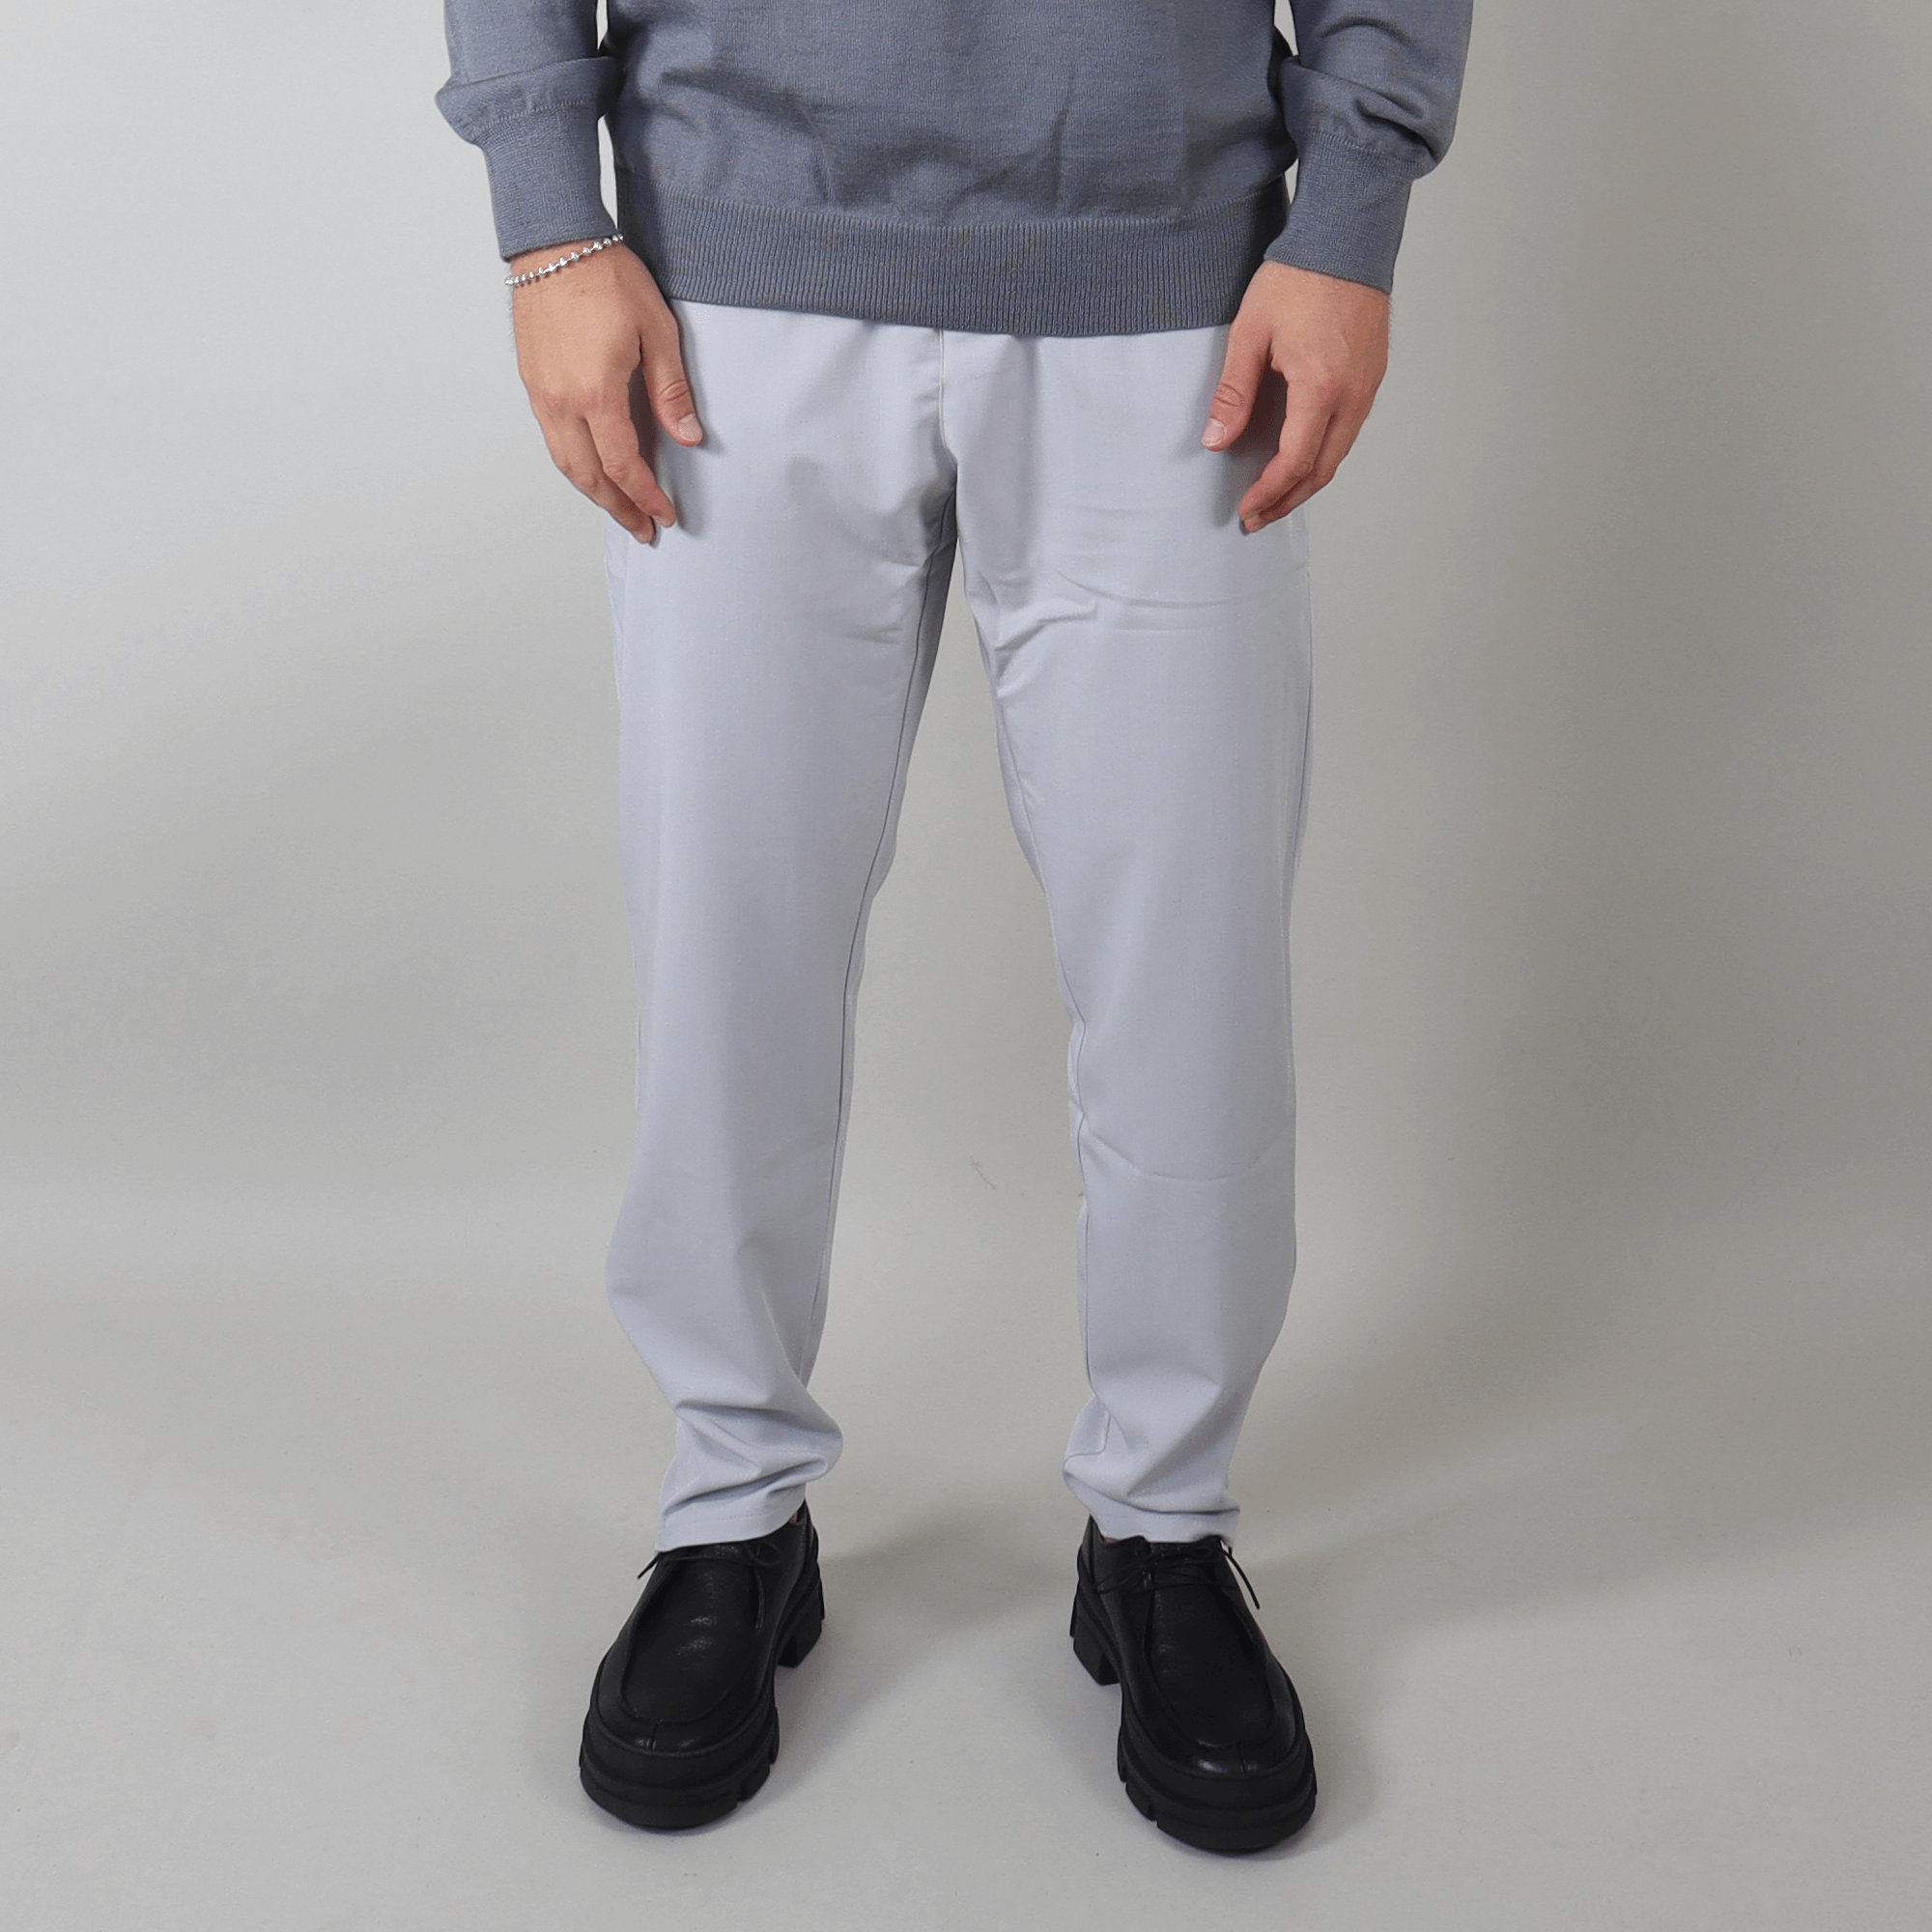 PRJCT zip pants pantalon light grey